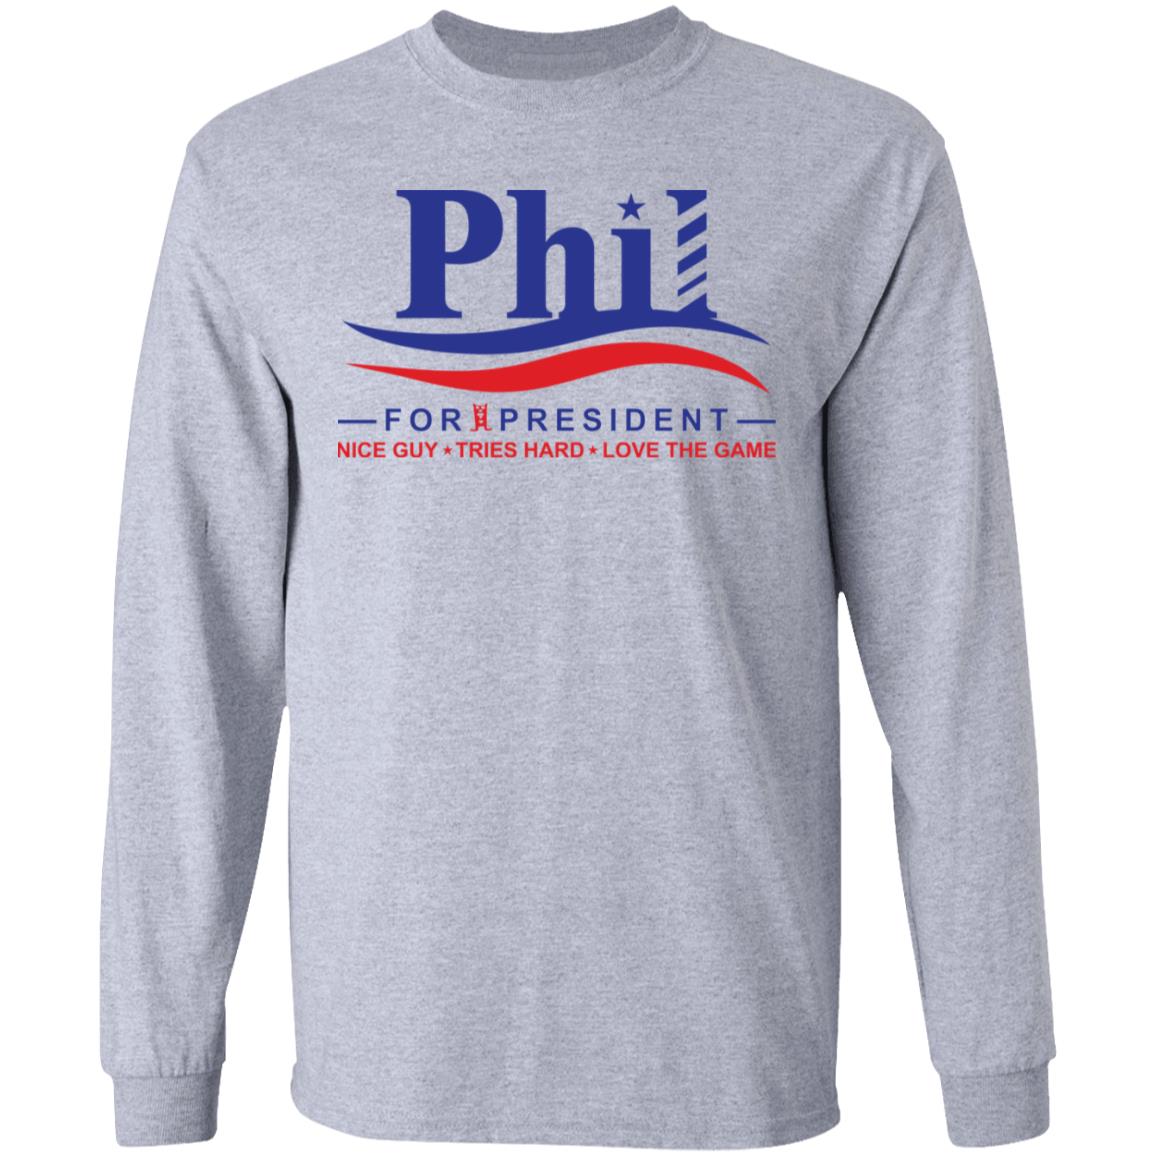 phil for president t shirt